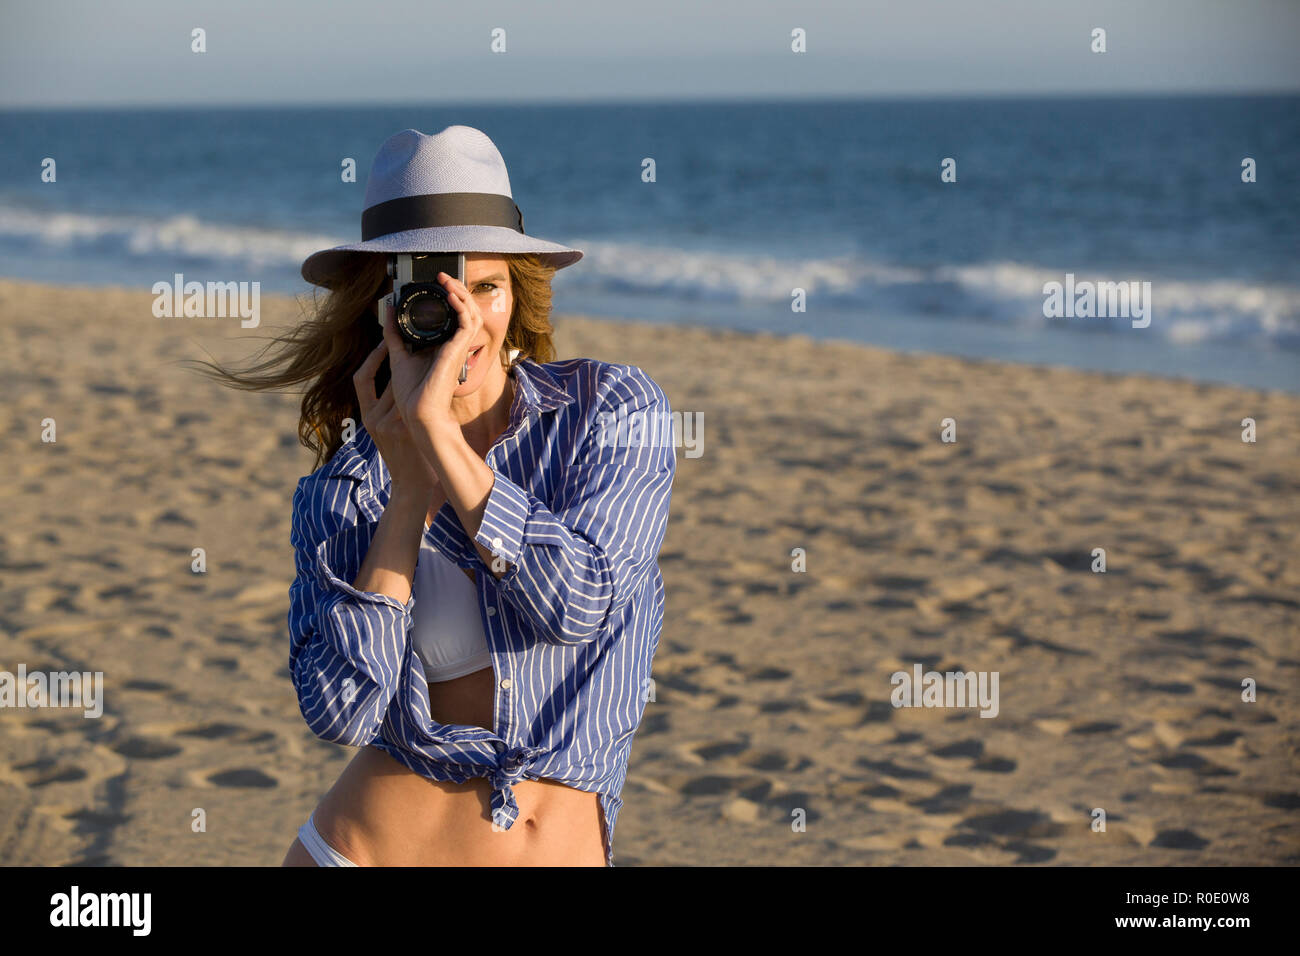 Retrato de mujer Mid-Adult Half-Length mirando a través del lente de la cámara en la playa Foto de stock